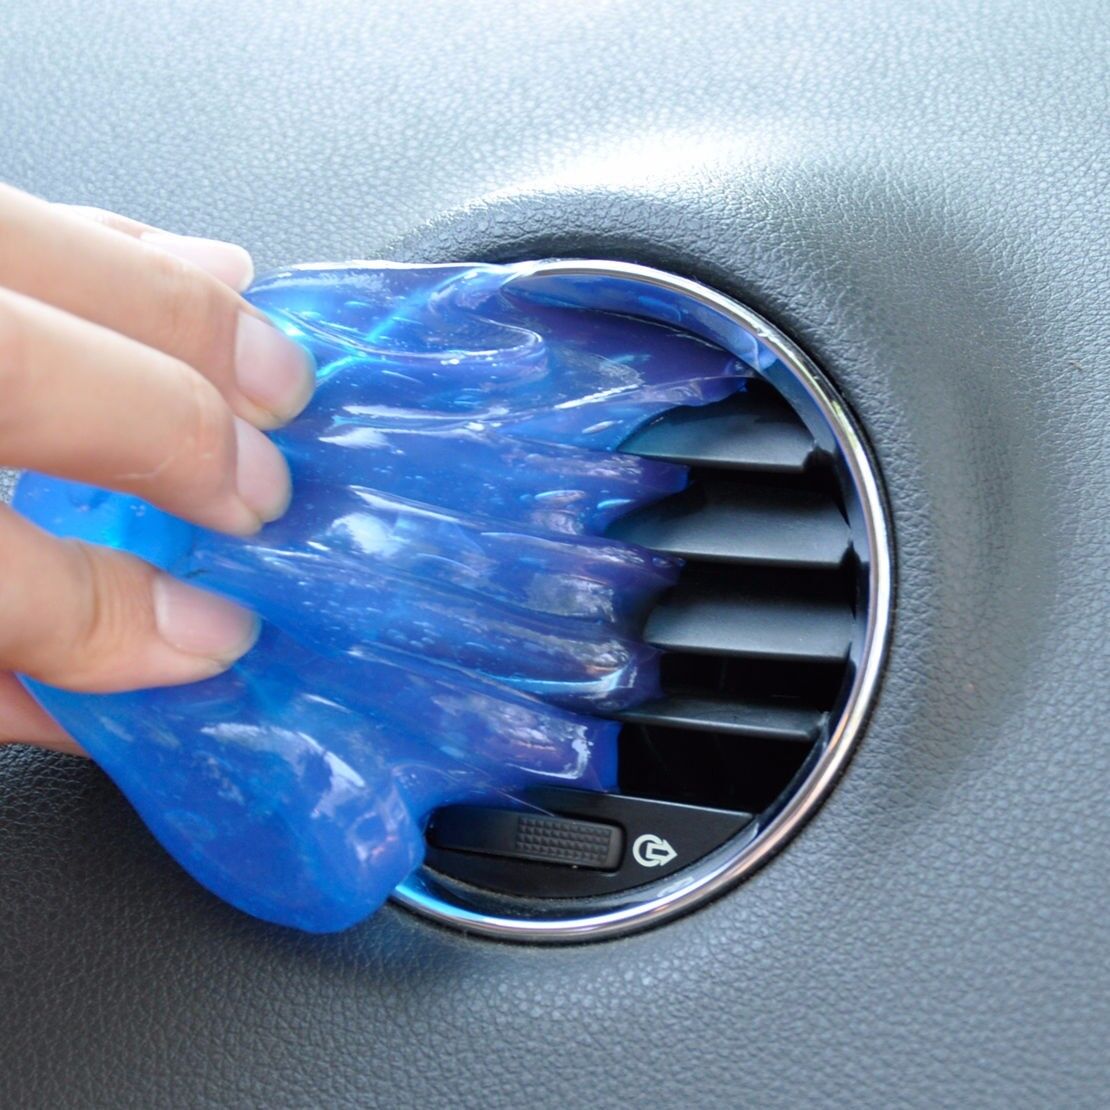 Magic Glue Clean Tool Interior Panel Air Outlet Vent Dashboard Dust Cleaner Gu